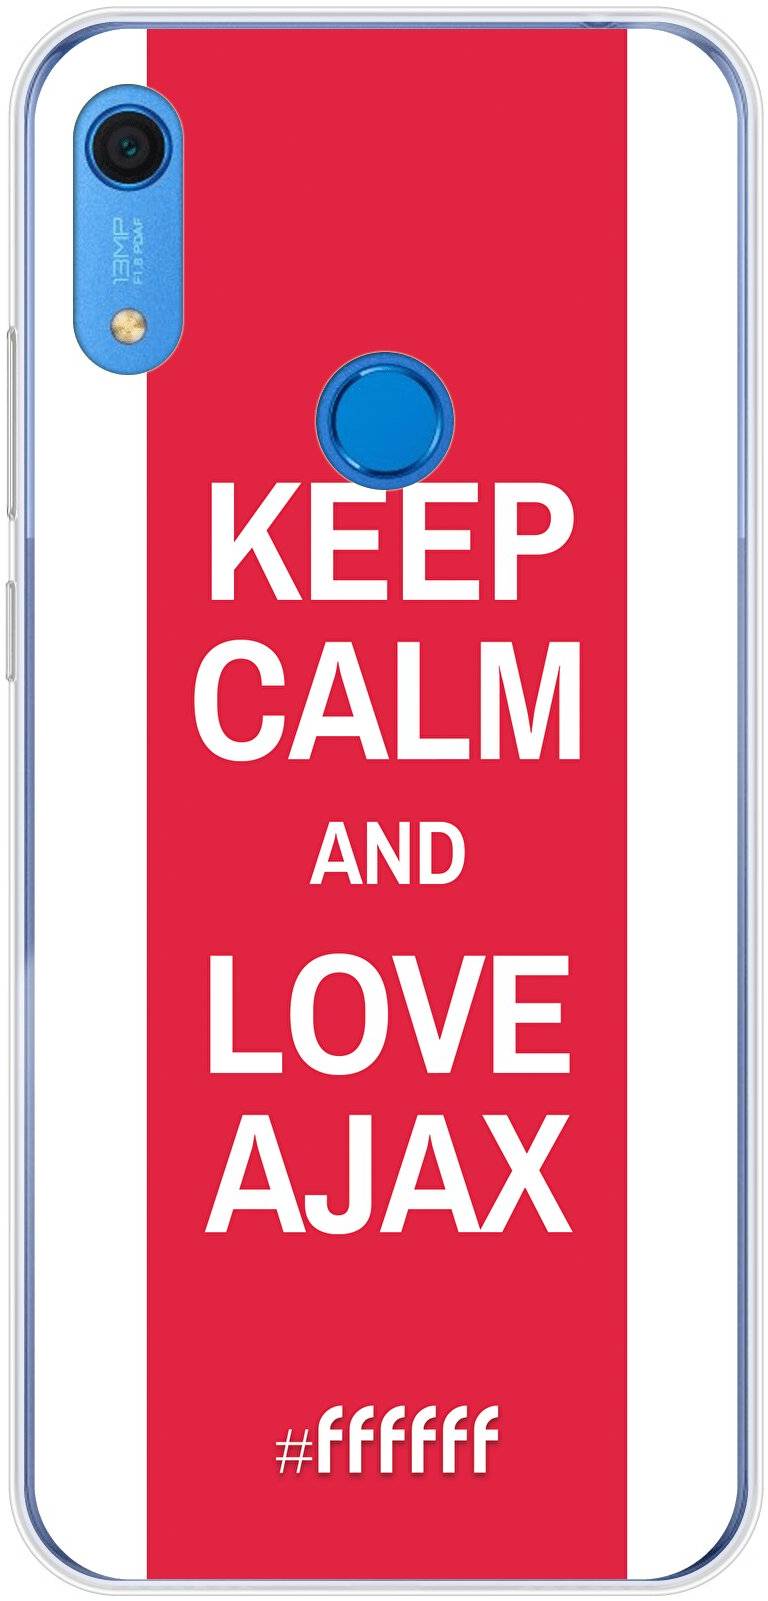 AFC Ajax Keep Calm Y6 (2019)